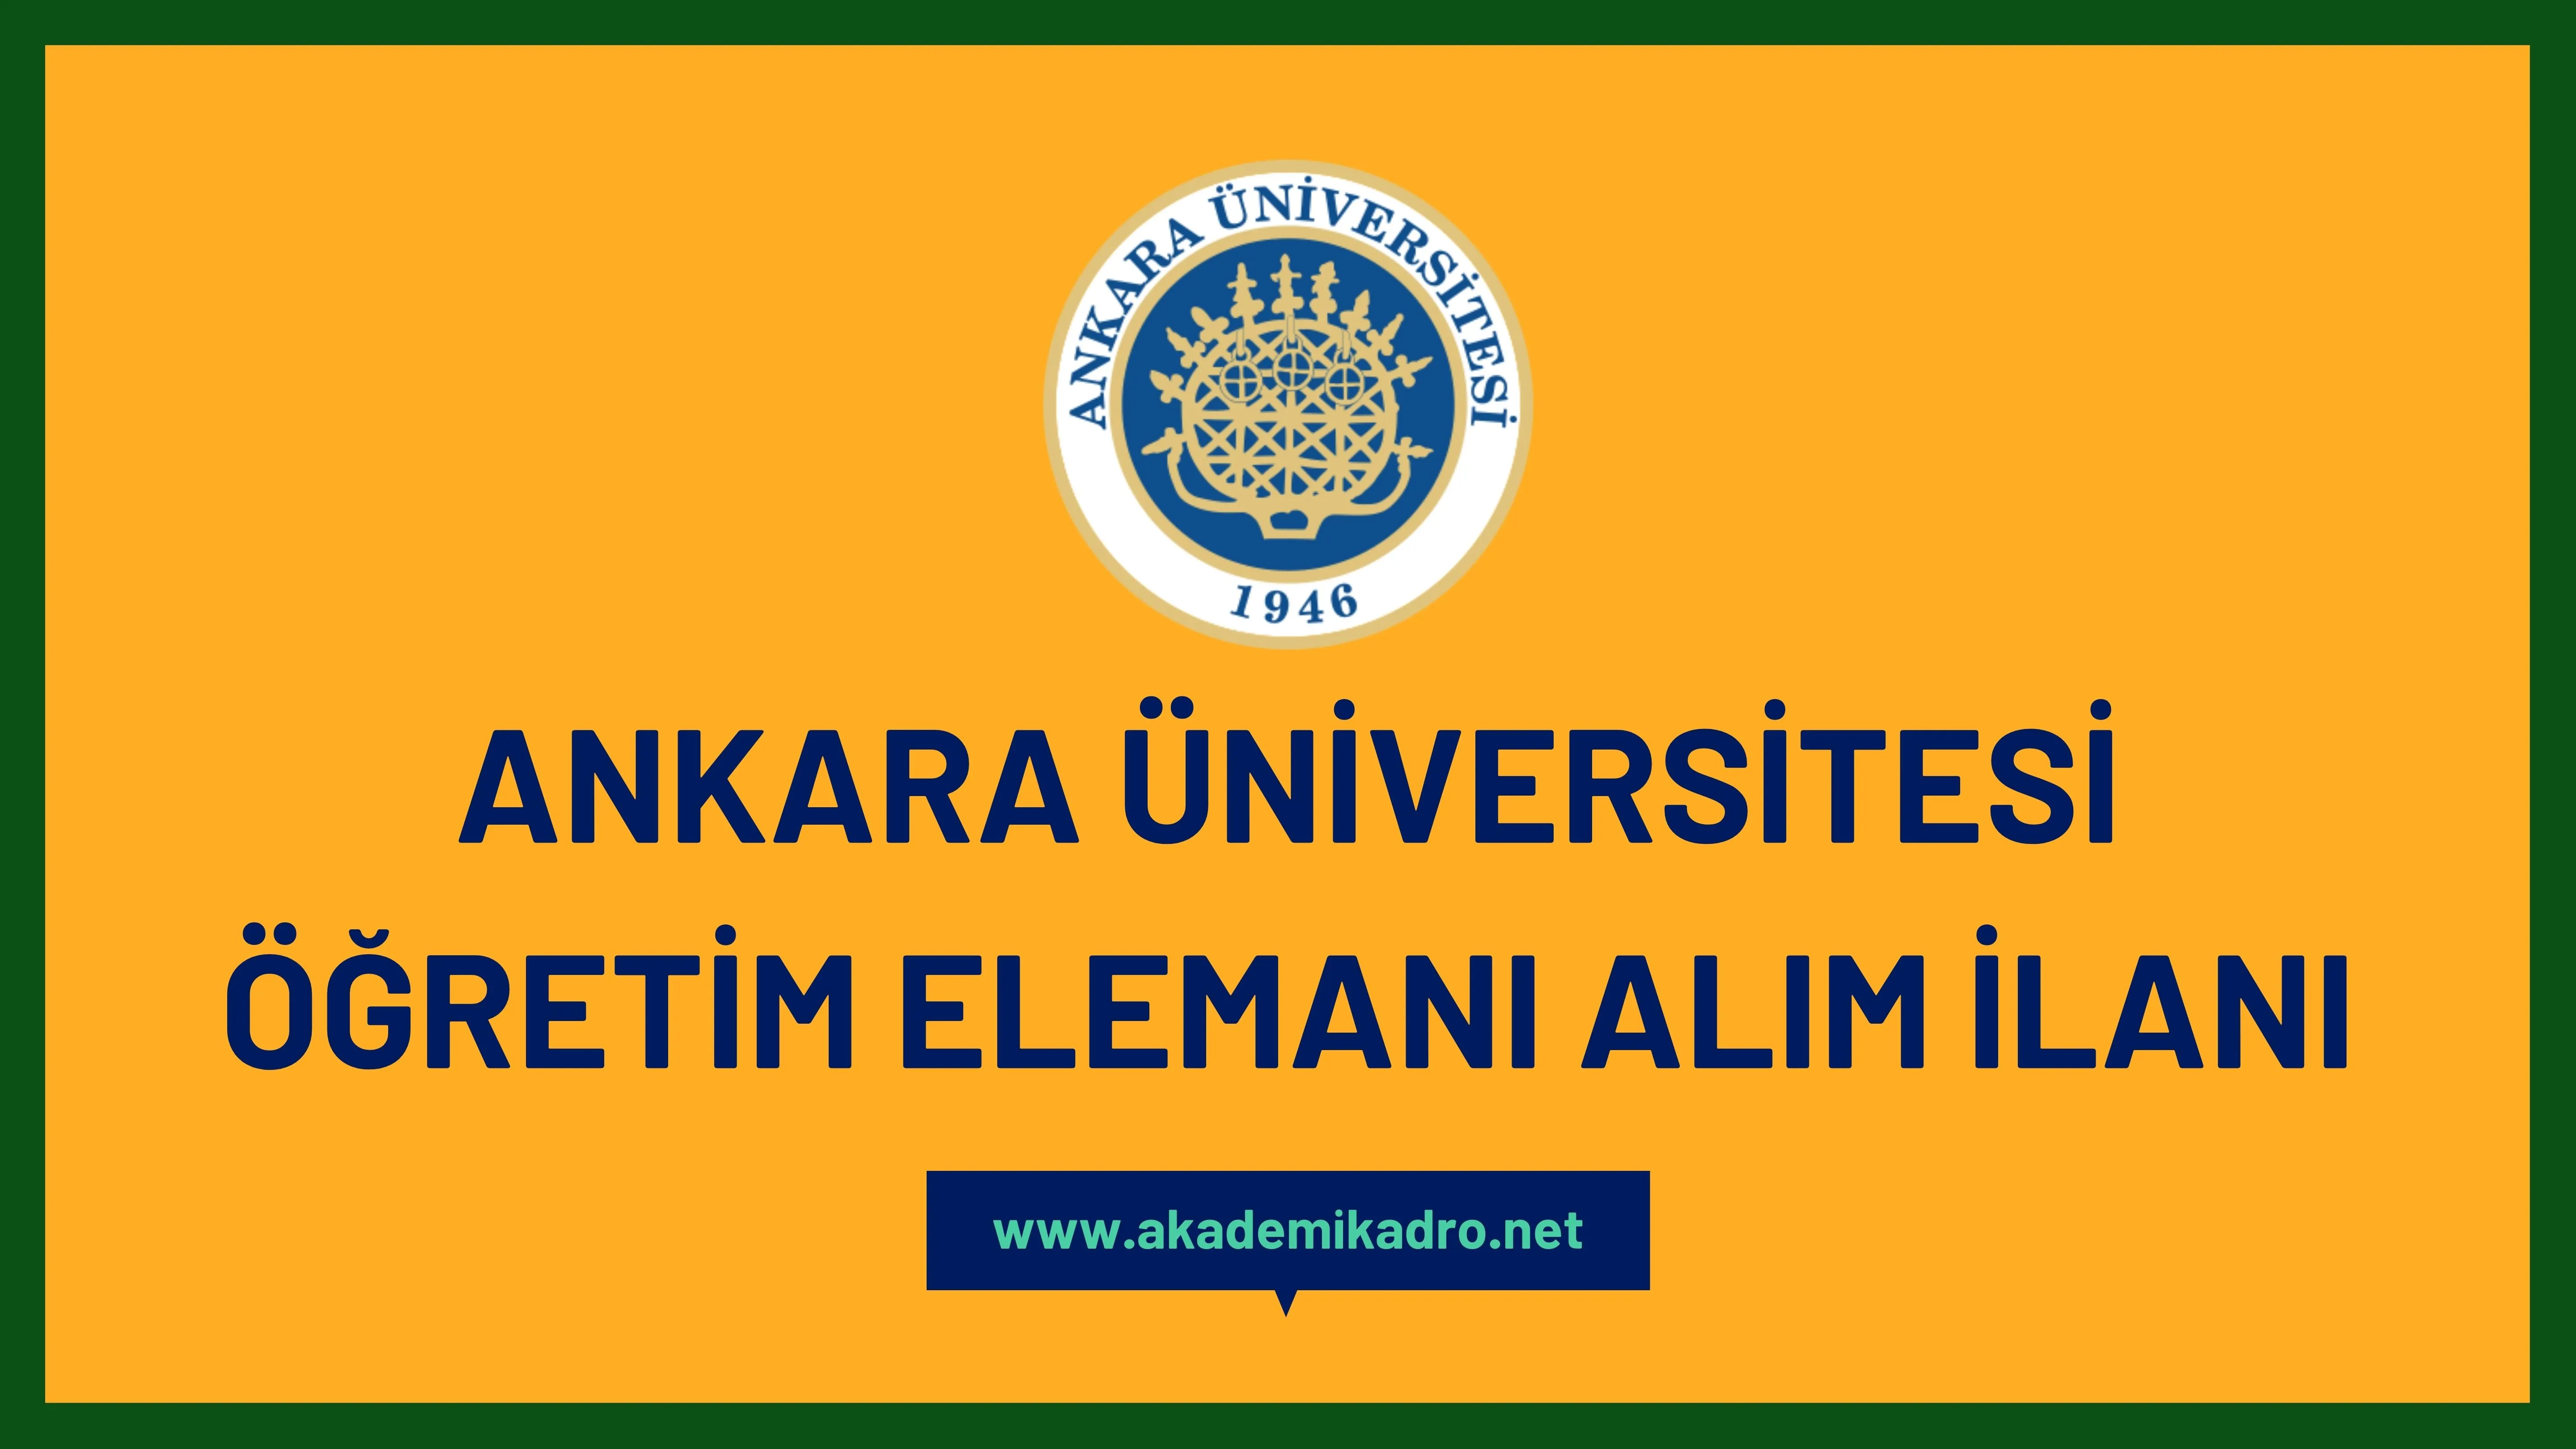 Ankara Üniversitesi birçok alandan 74 öğretim üyesi alacak.